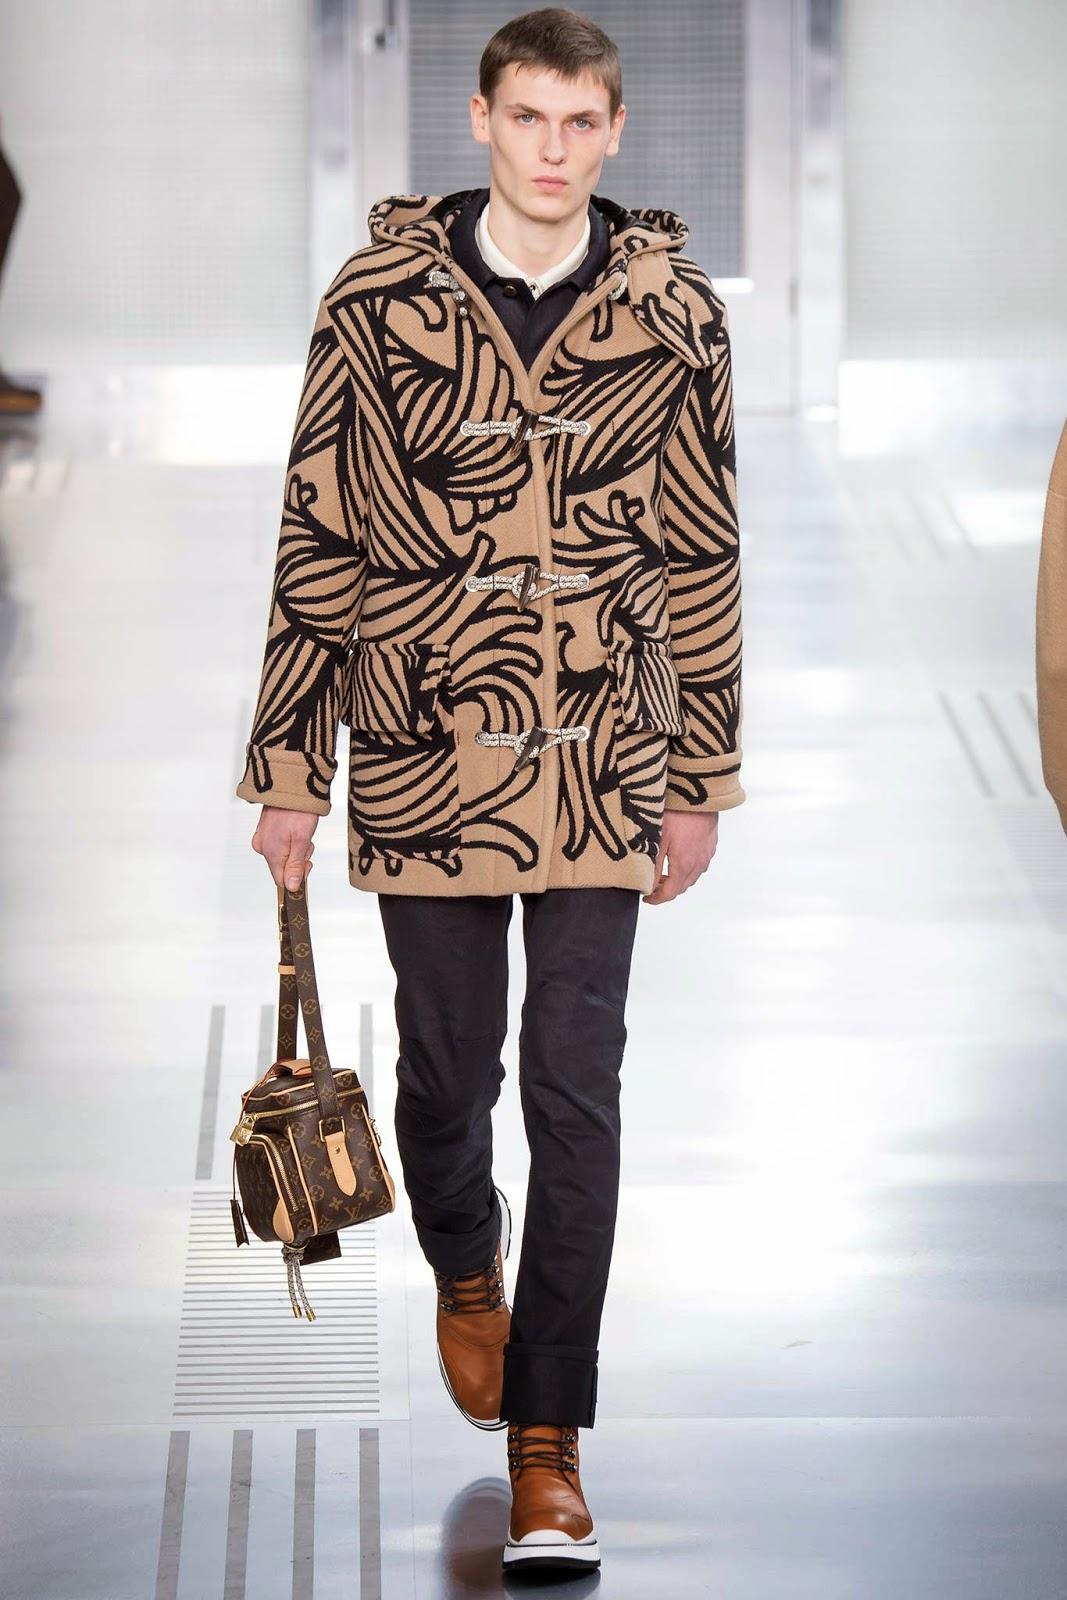 On continue de barouder avec la collection masculine hivernale Louis Vuitton...